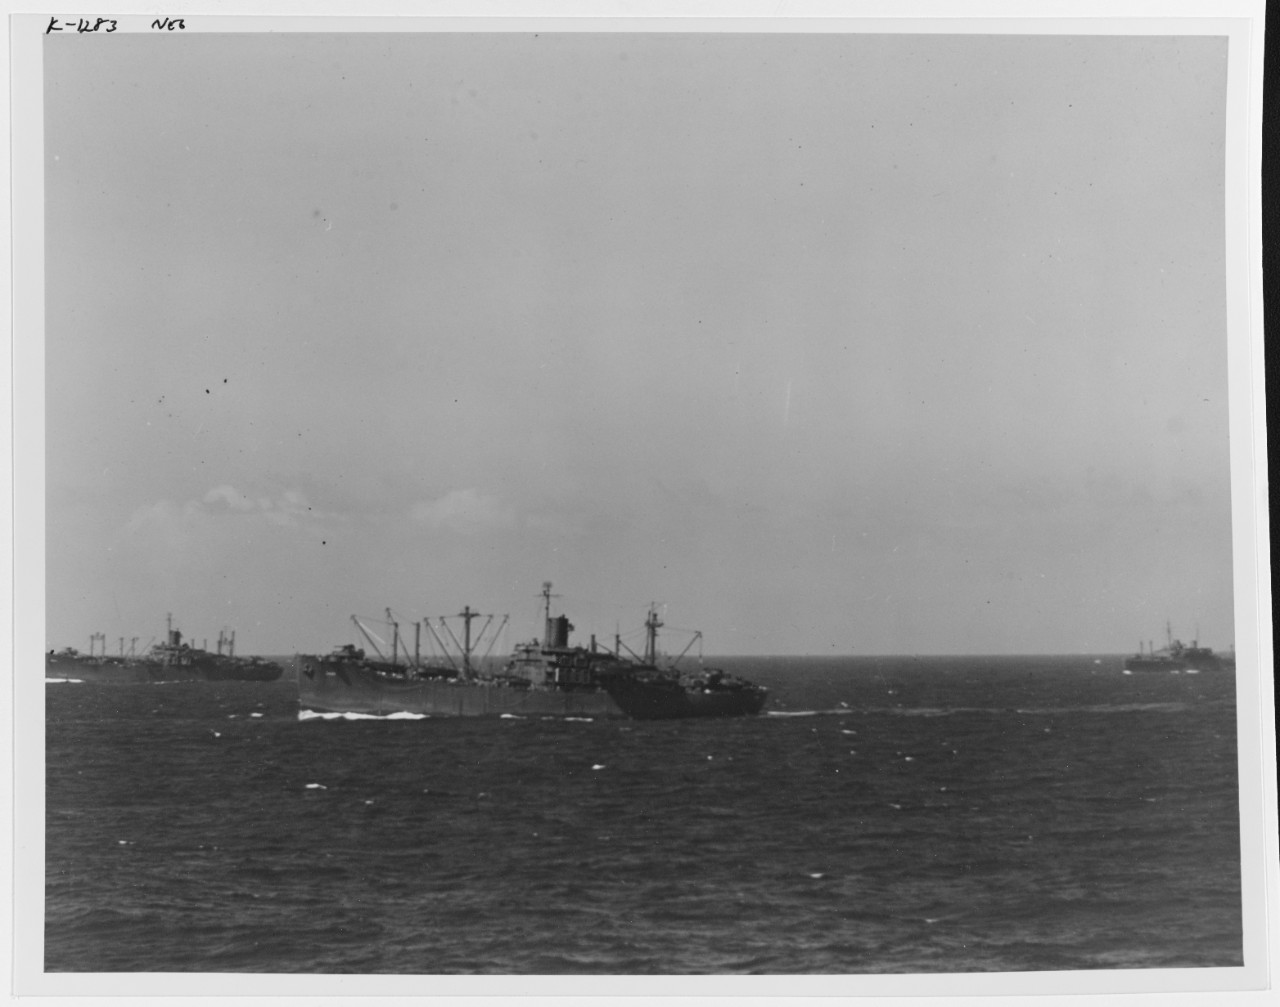 Kwajalein Operation, January-February 1944